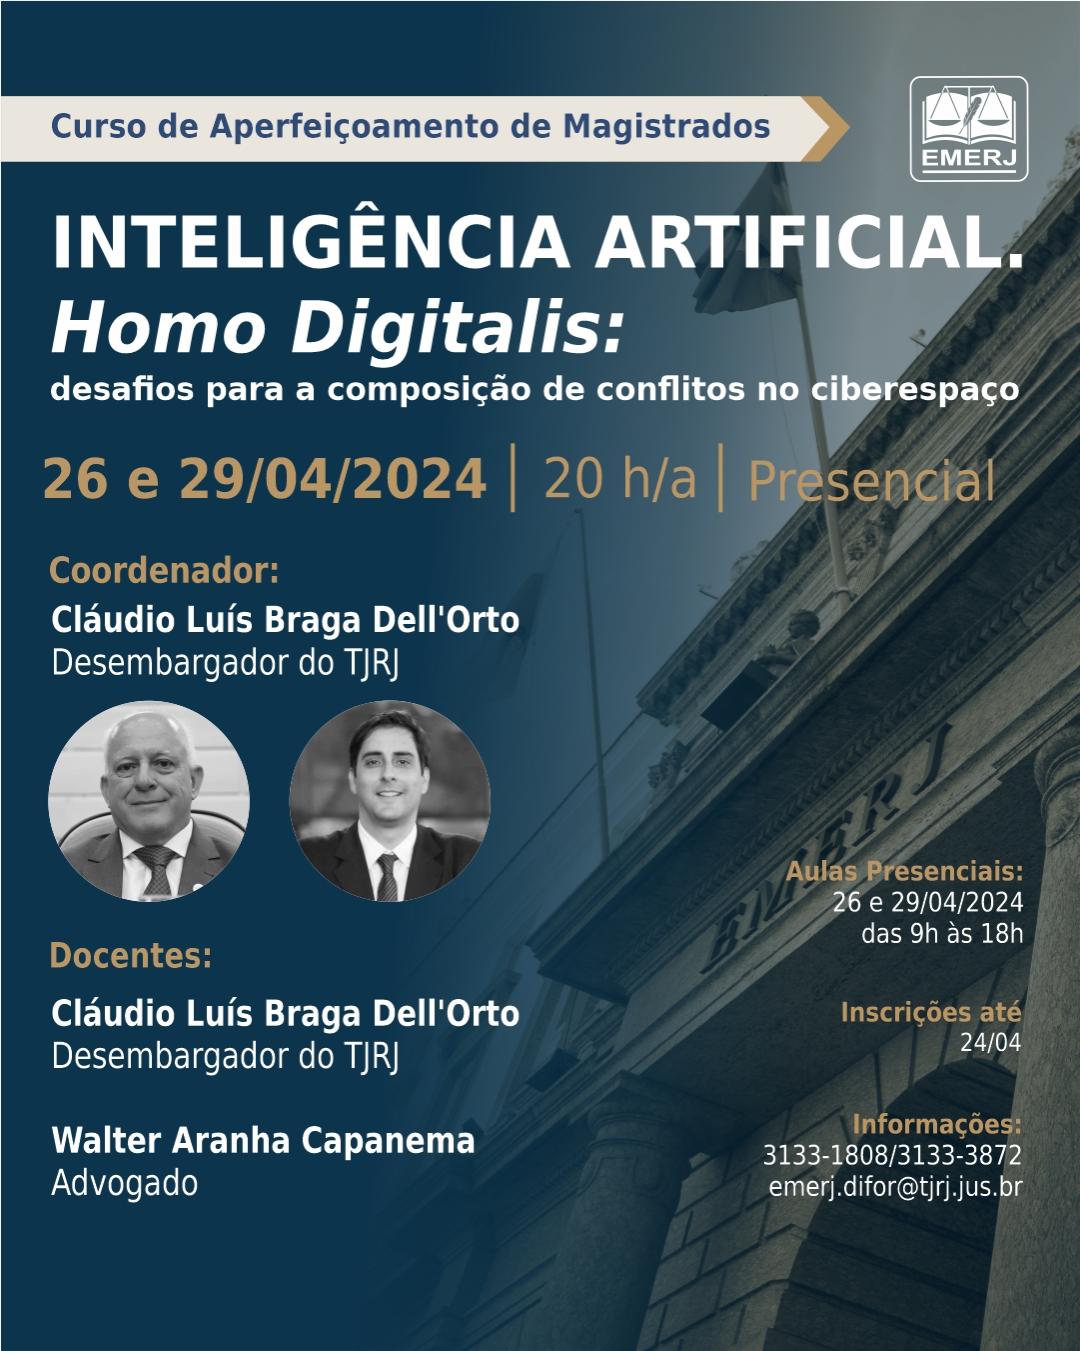 Imagem do banner principal do curso - Inteligência Artificial. Homo Digitalis: desafios para a composição de conflitos no ciberespaço.